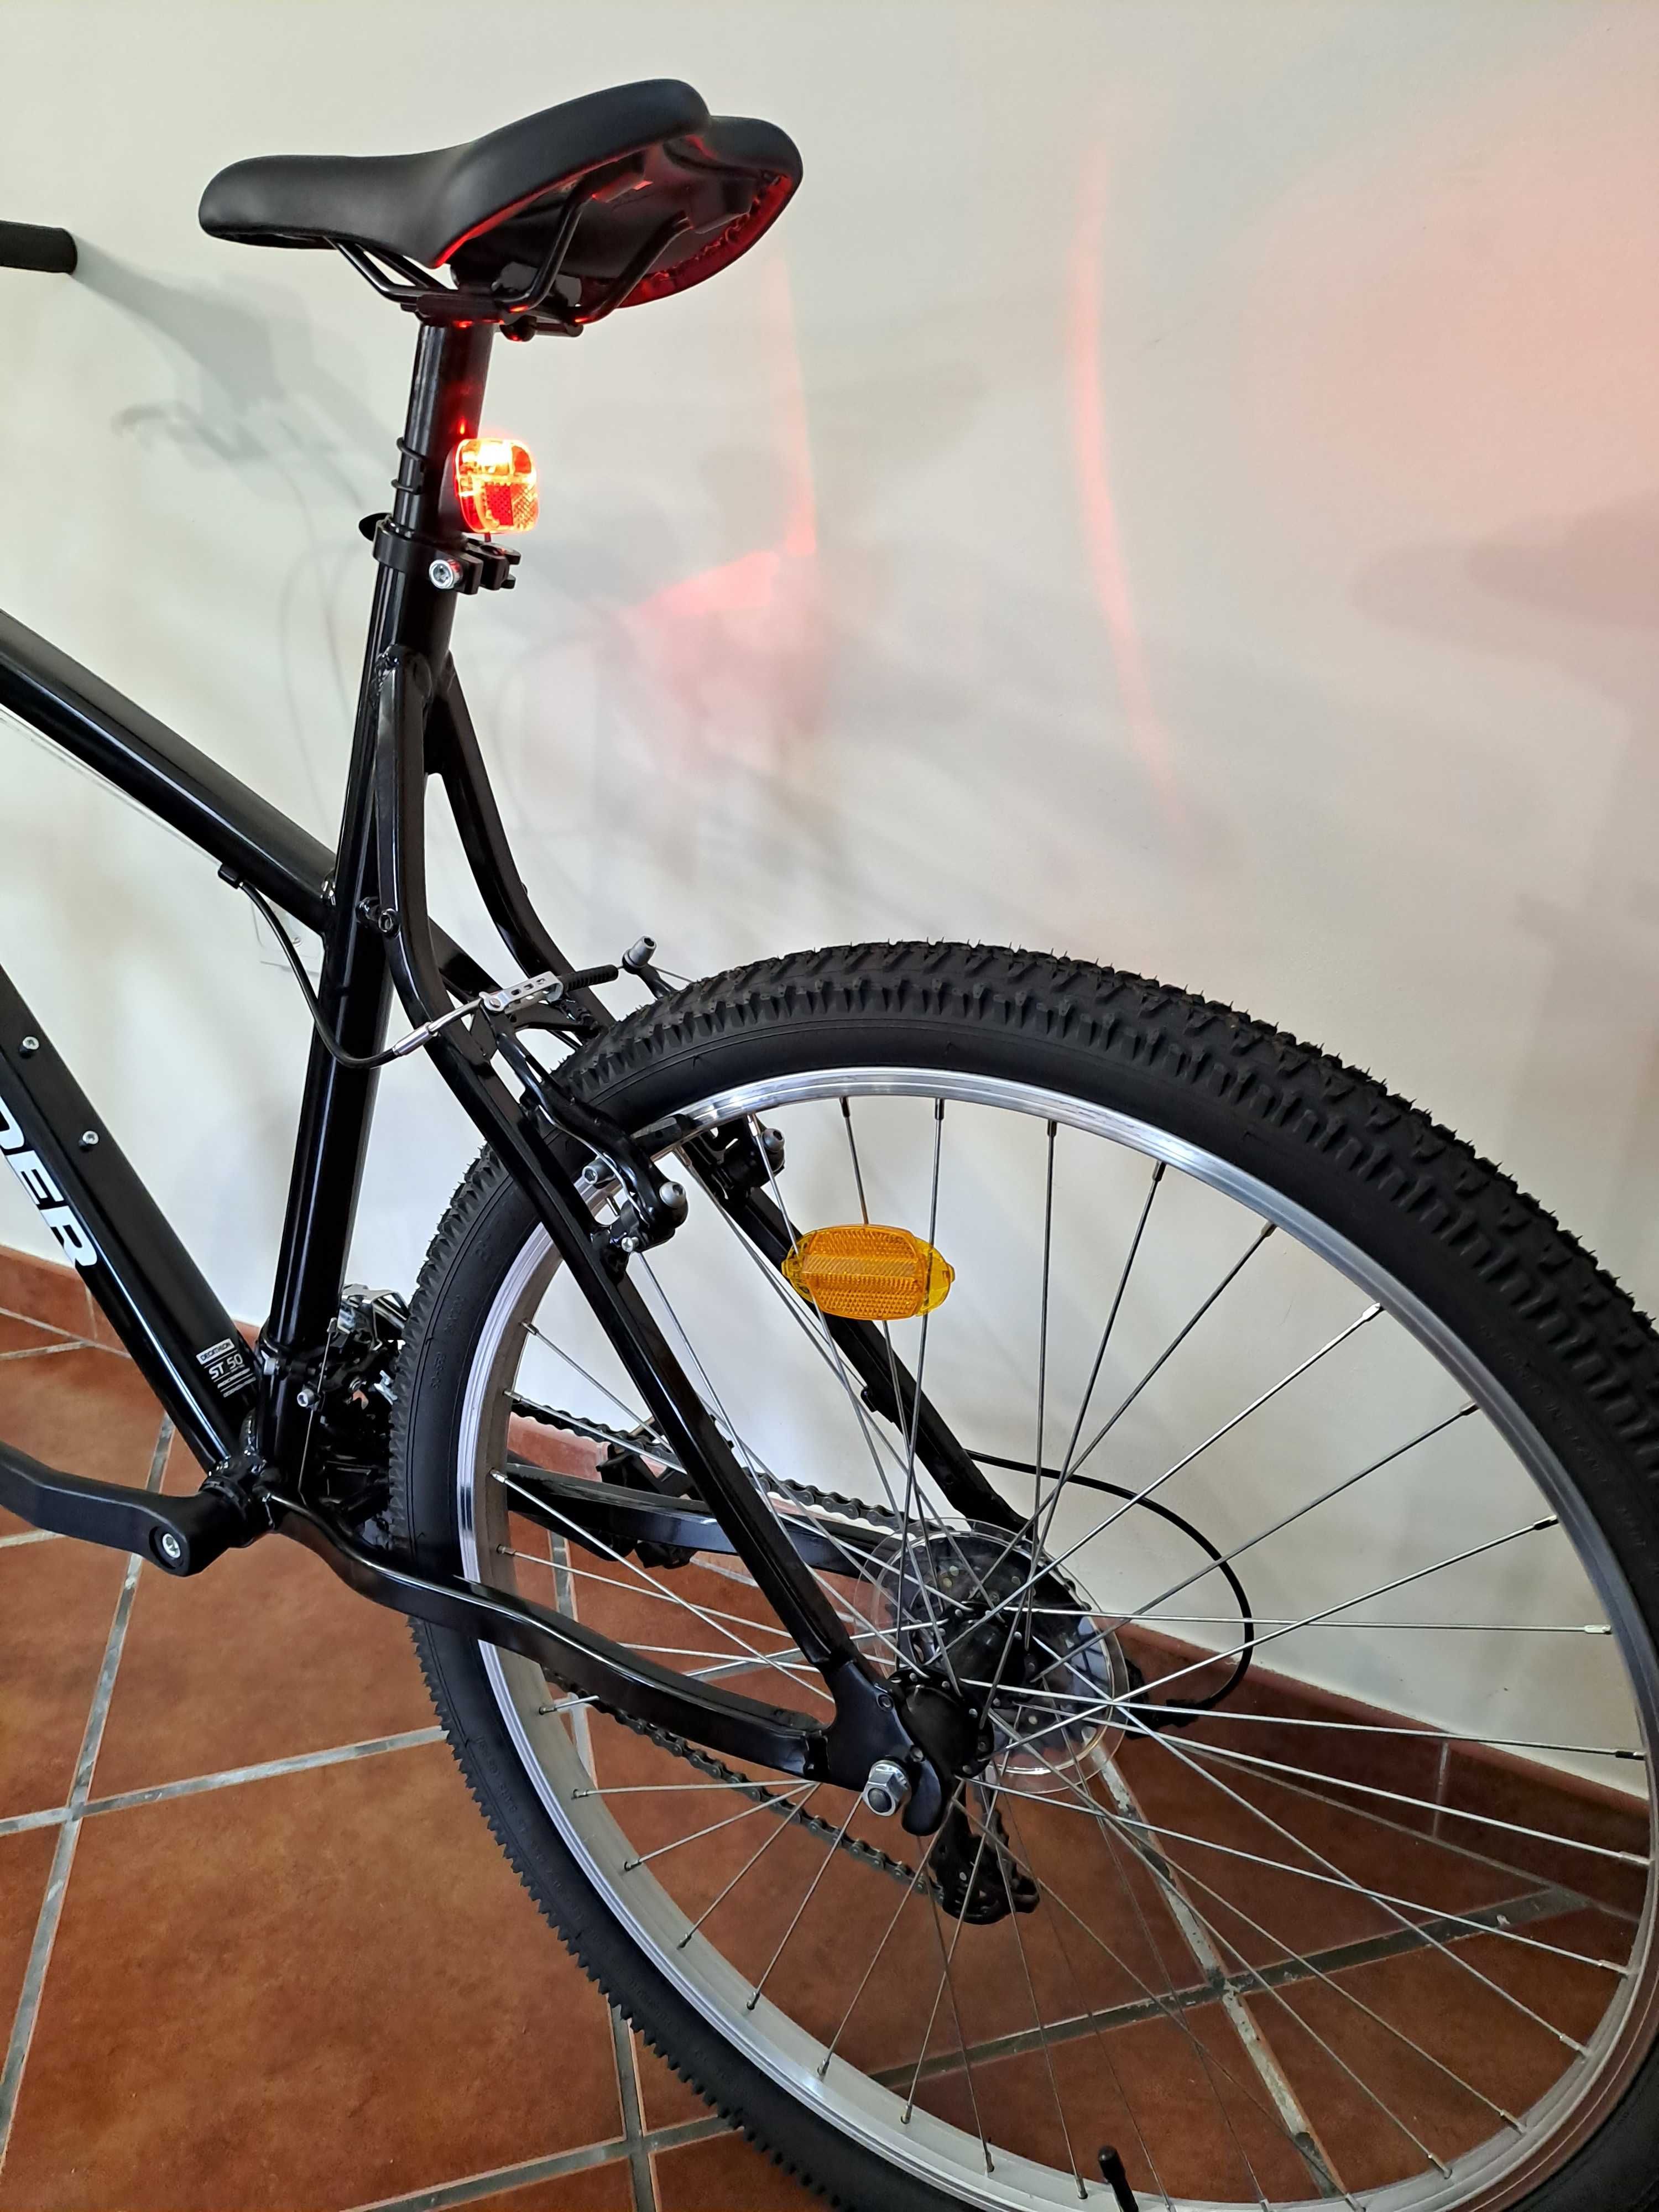 Bicicleta Rockrider ST 50 (NOVA), tamanho L, roda 26